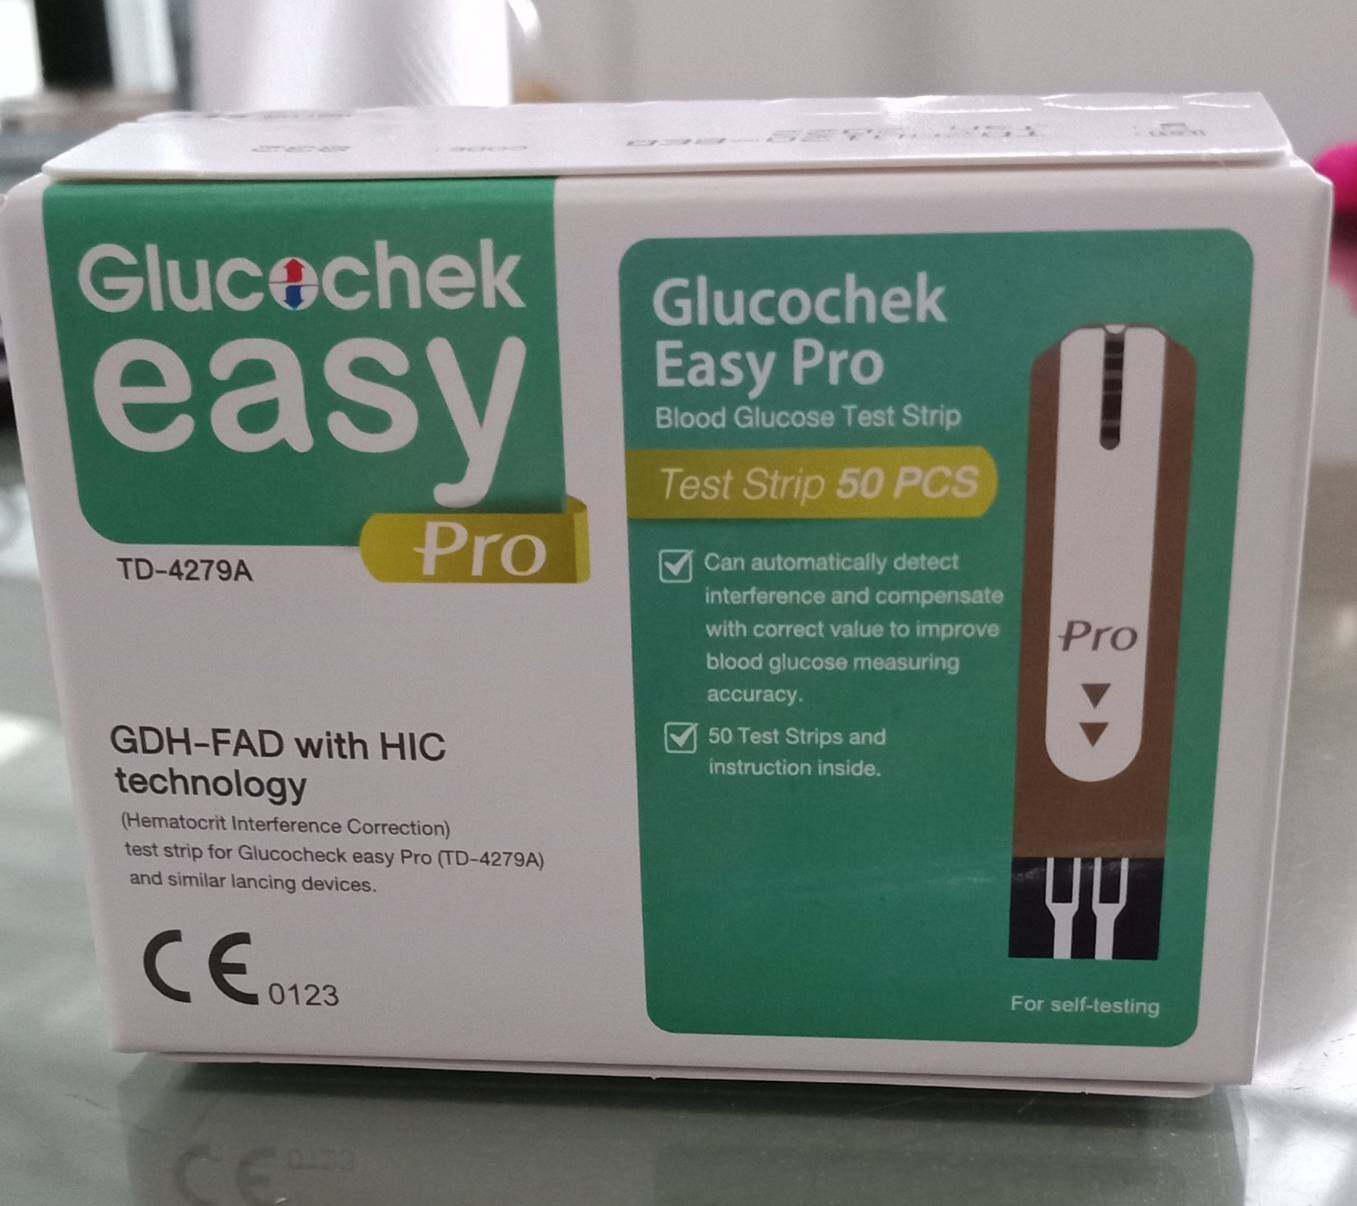 แผ่นตรวจน้ำตาลในเลือด Glucochek Easy Pro 50 ชิ้น